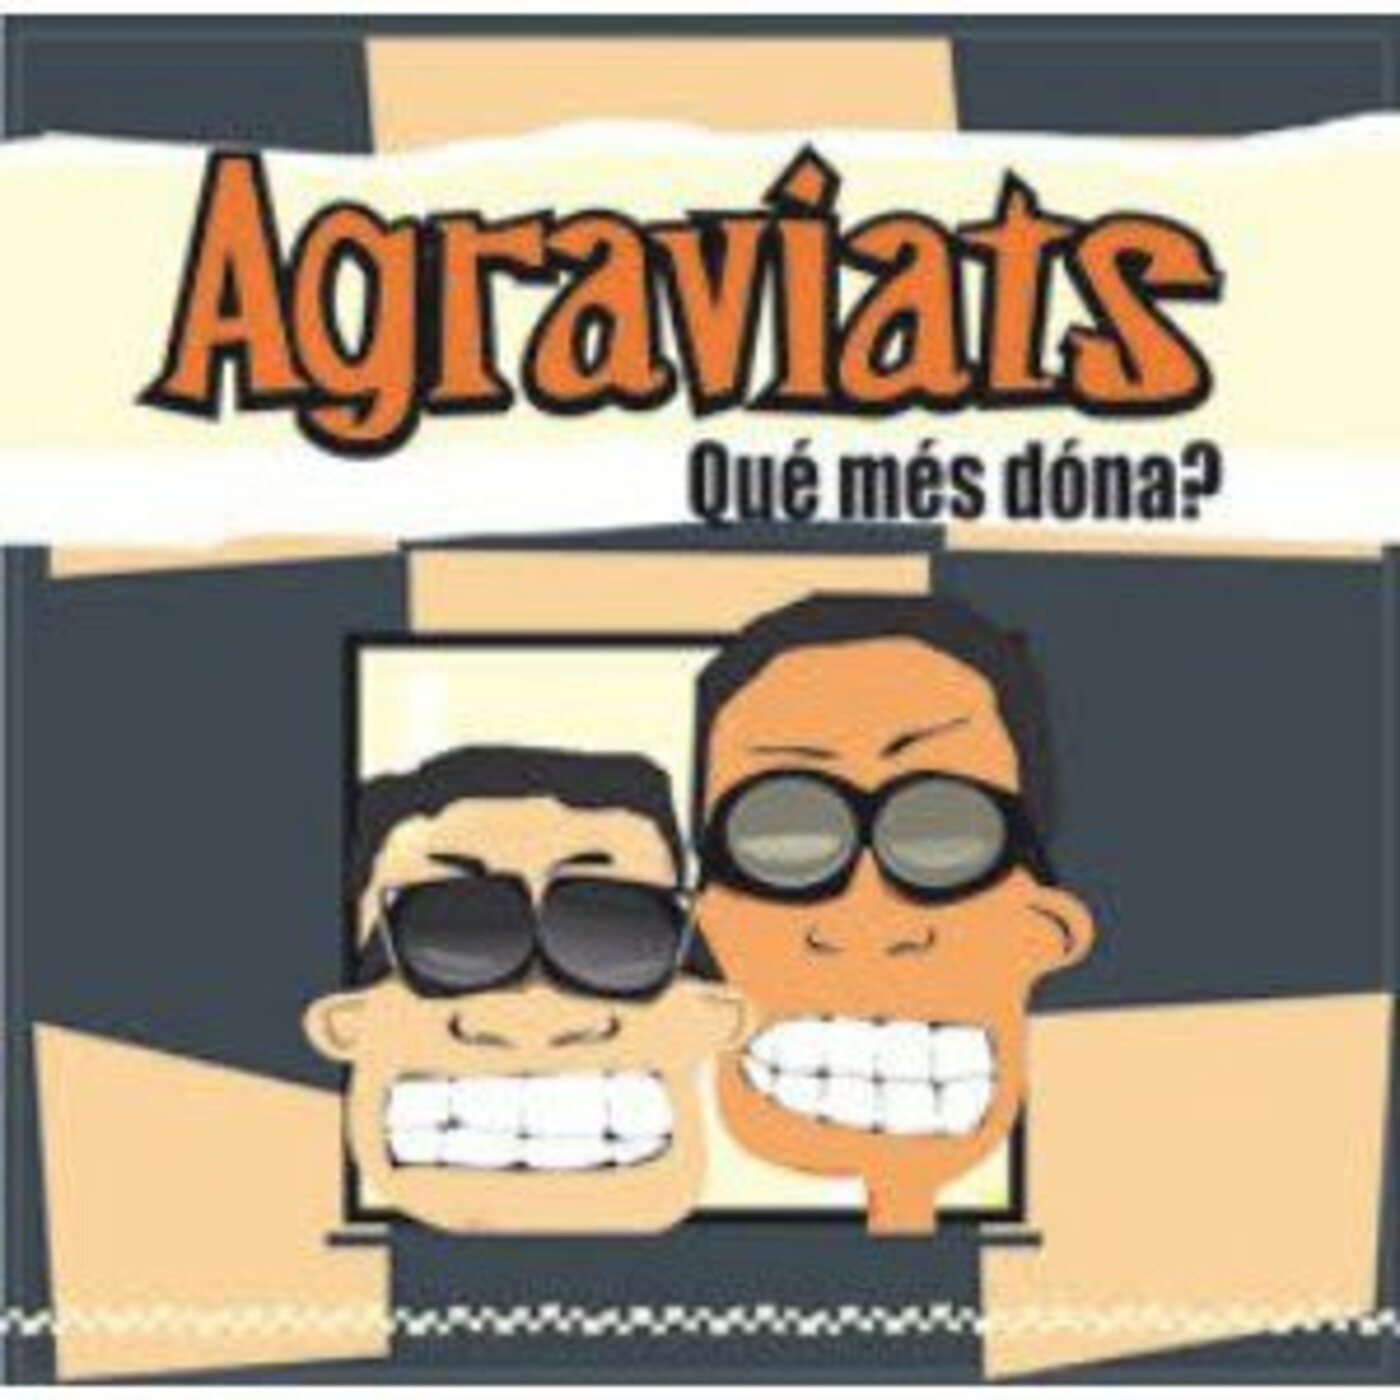 Agraviats - Què més dóna? | musica en valencià